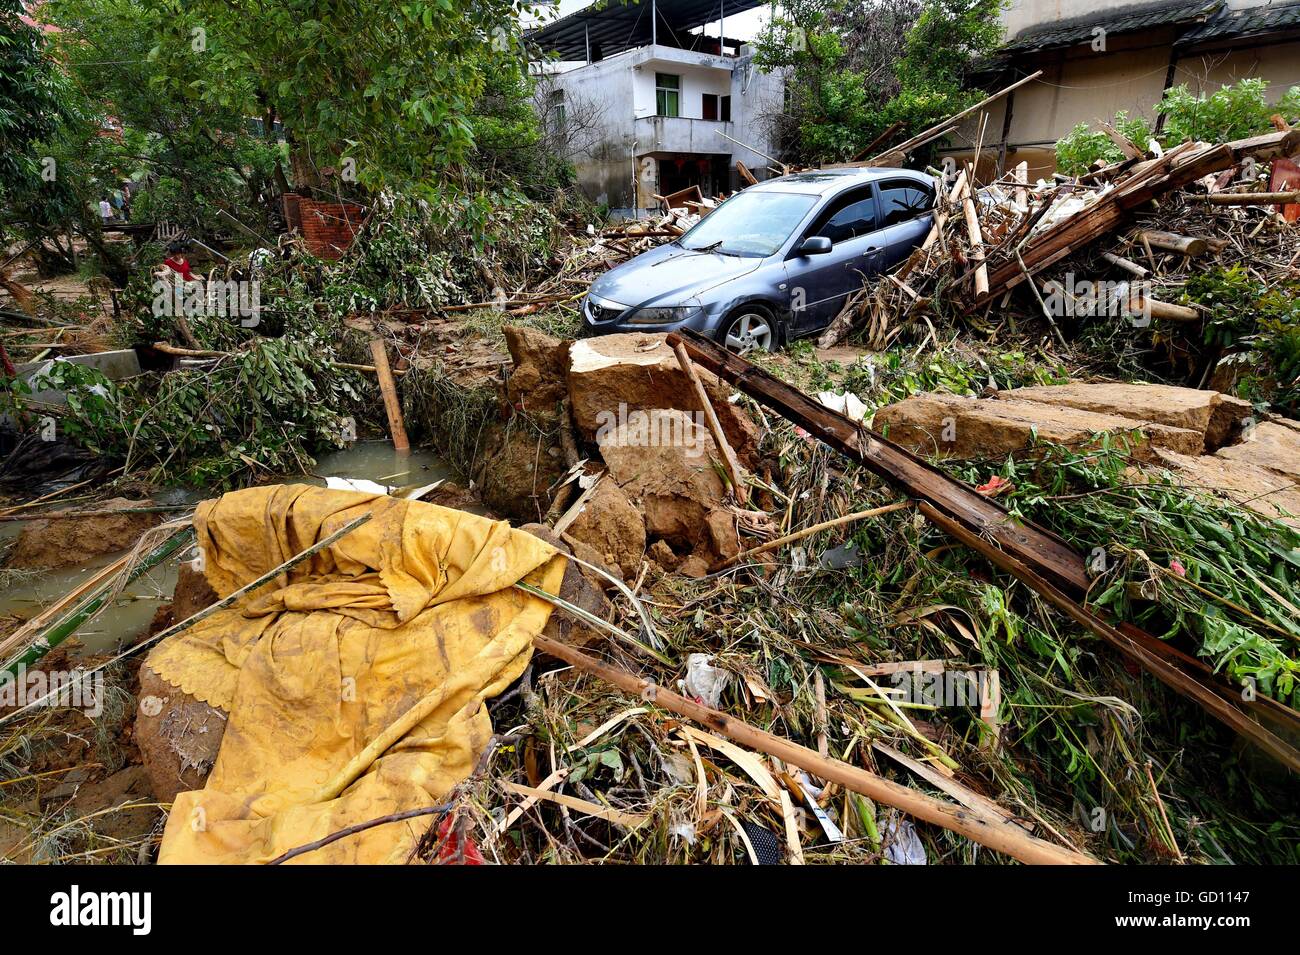 Minqing, Chinas Provinz Fujian. 11. Juli 2016. Ein Auto ist in Kasinos am Bandong Township begraben, nachdem Überschwemmungen in Minqing County, Südost-China Fujian Provinz, 11. Juli 2016. Nepartak, der erste Taifun des Jahres brachte Starkregen Minqing, wodurch 79.000 Mu (5.267 Hektar) Kulturen überschwemmt, über 3.144 Häuser zerstört und 95.000 Menschen betroffen. Zehn Menschen starben und 11 Personen waren wegen der Taifun Nepartak. Rettung und Befreiung arbeitet derzeit im Gange. © Zhang Guojun/Xinhua/Alamy Live-Nachrichten Stockfoto